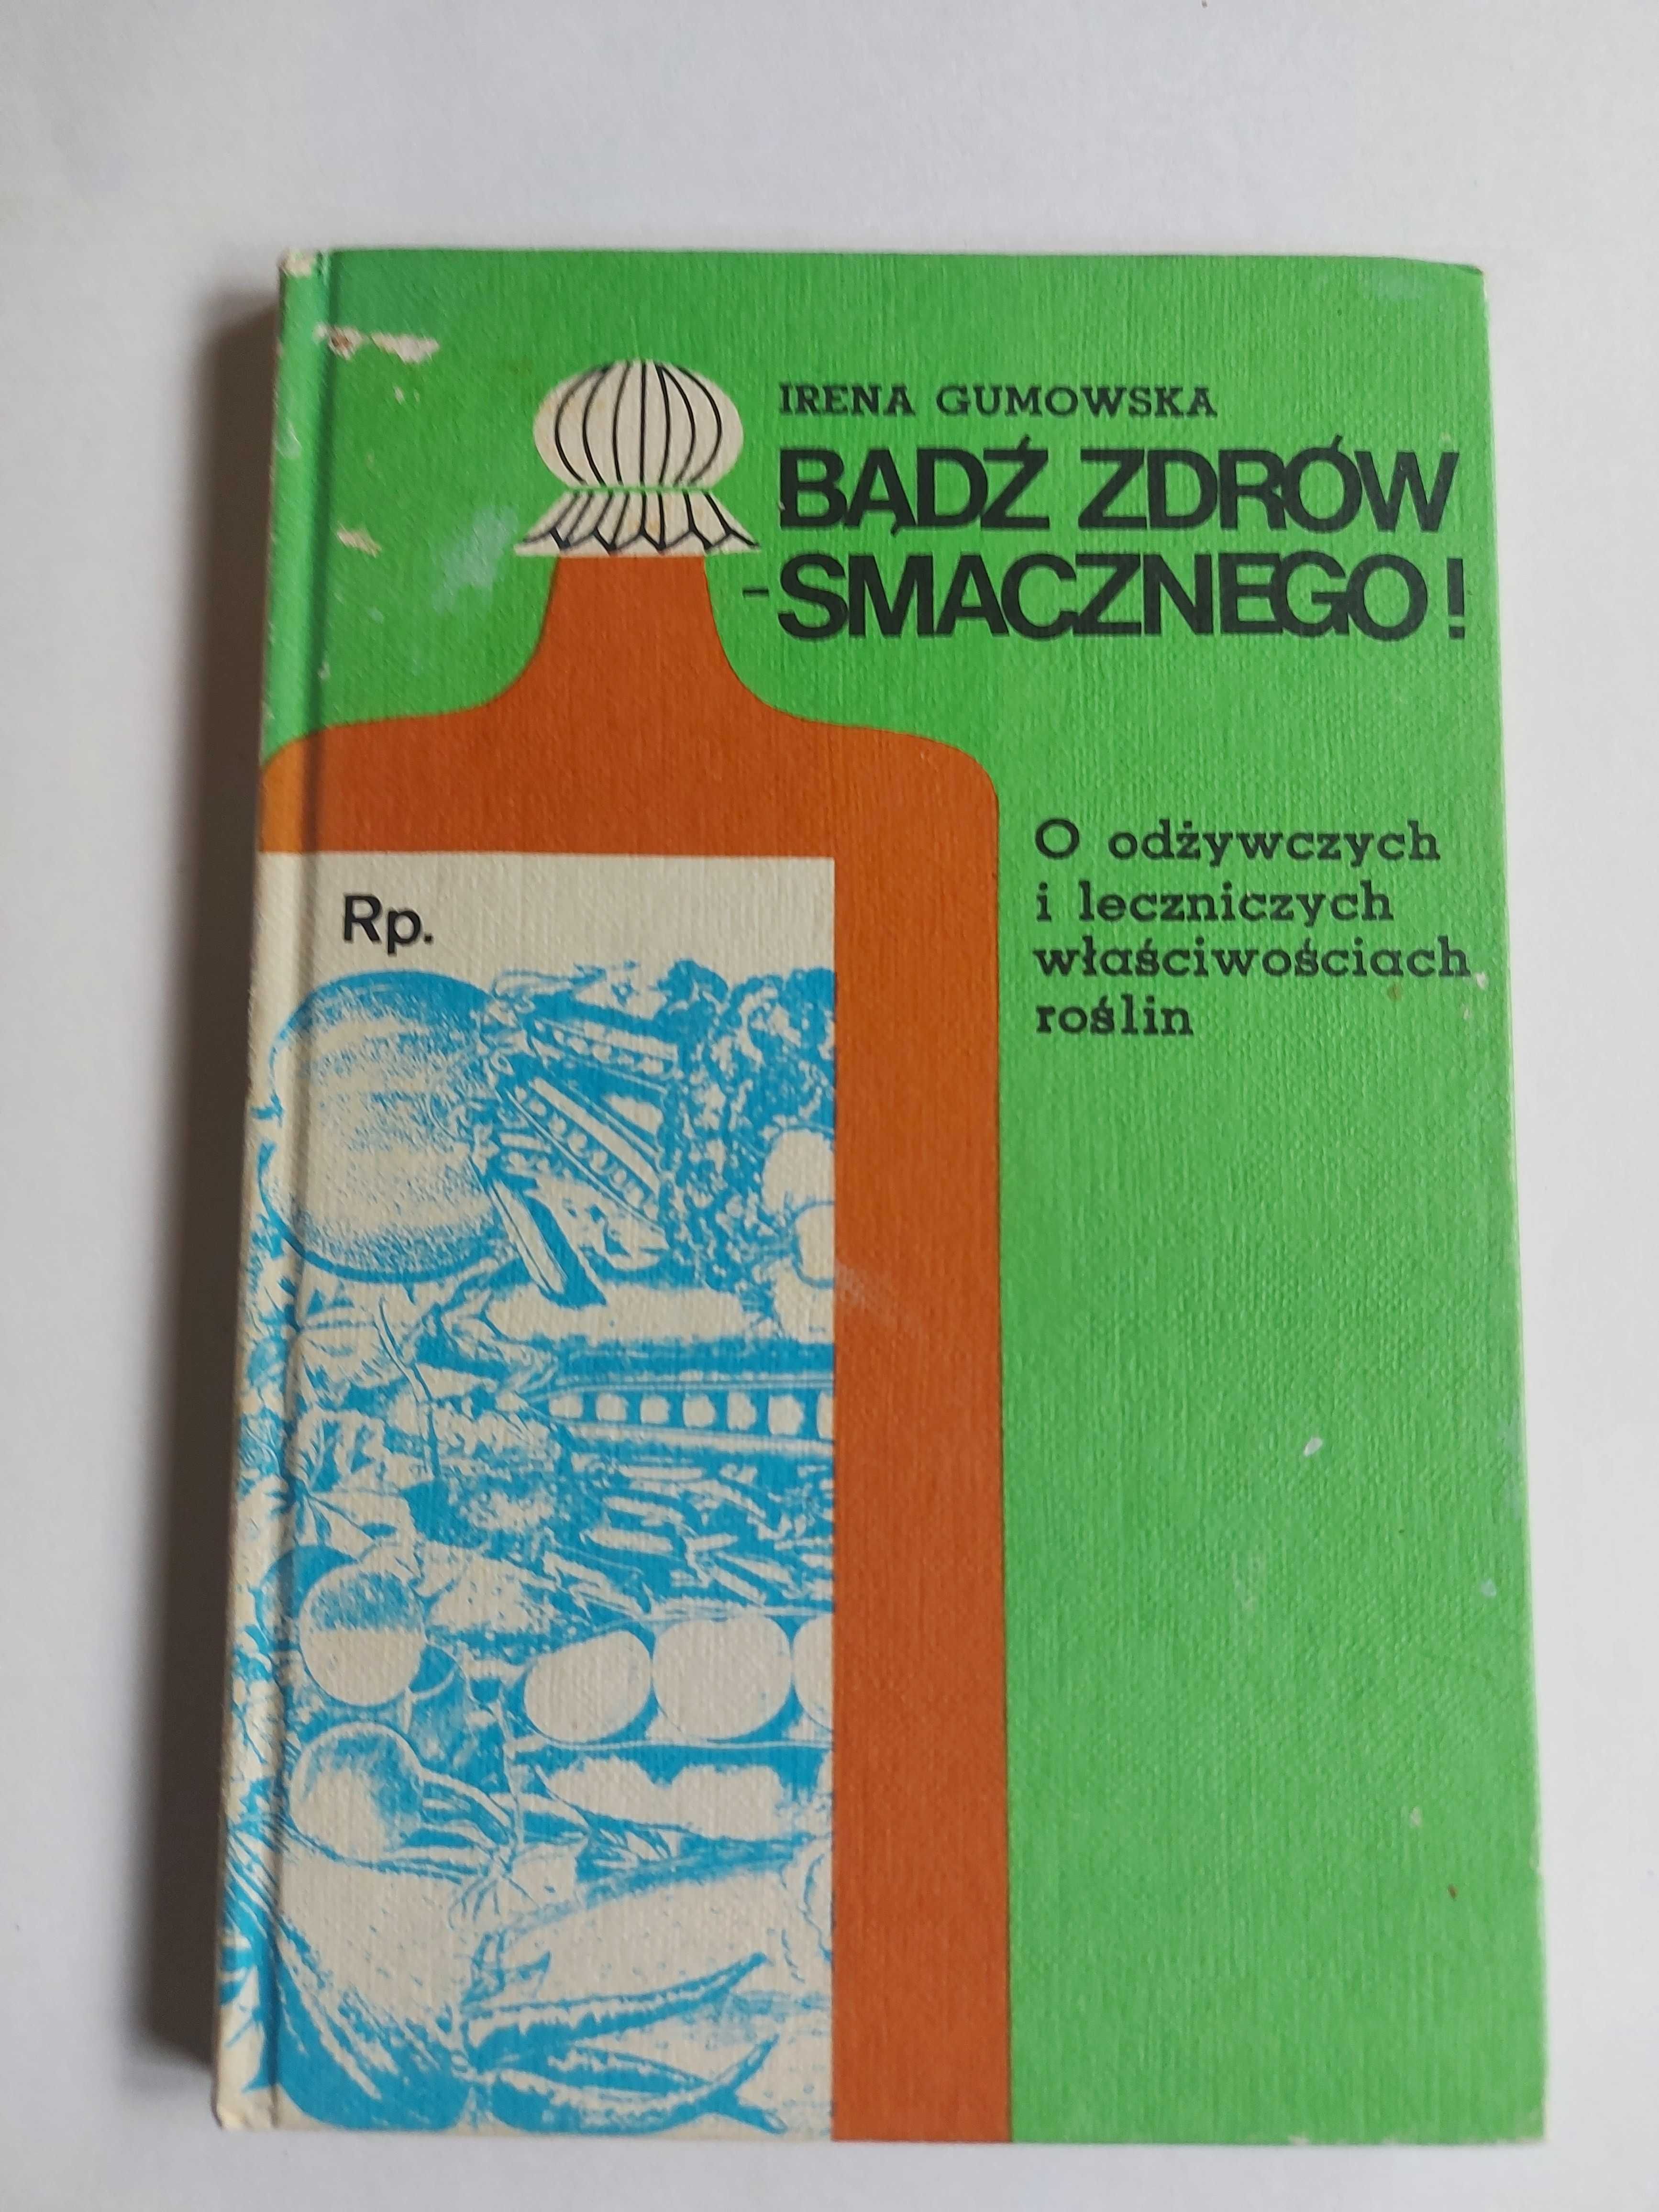 Irena Gumowska Bądź zdrów - smacznego rośliny warszawa 1984